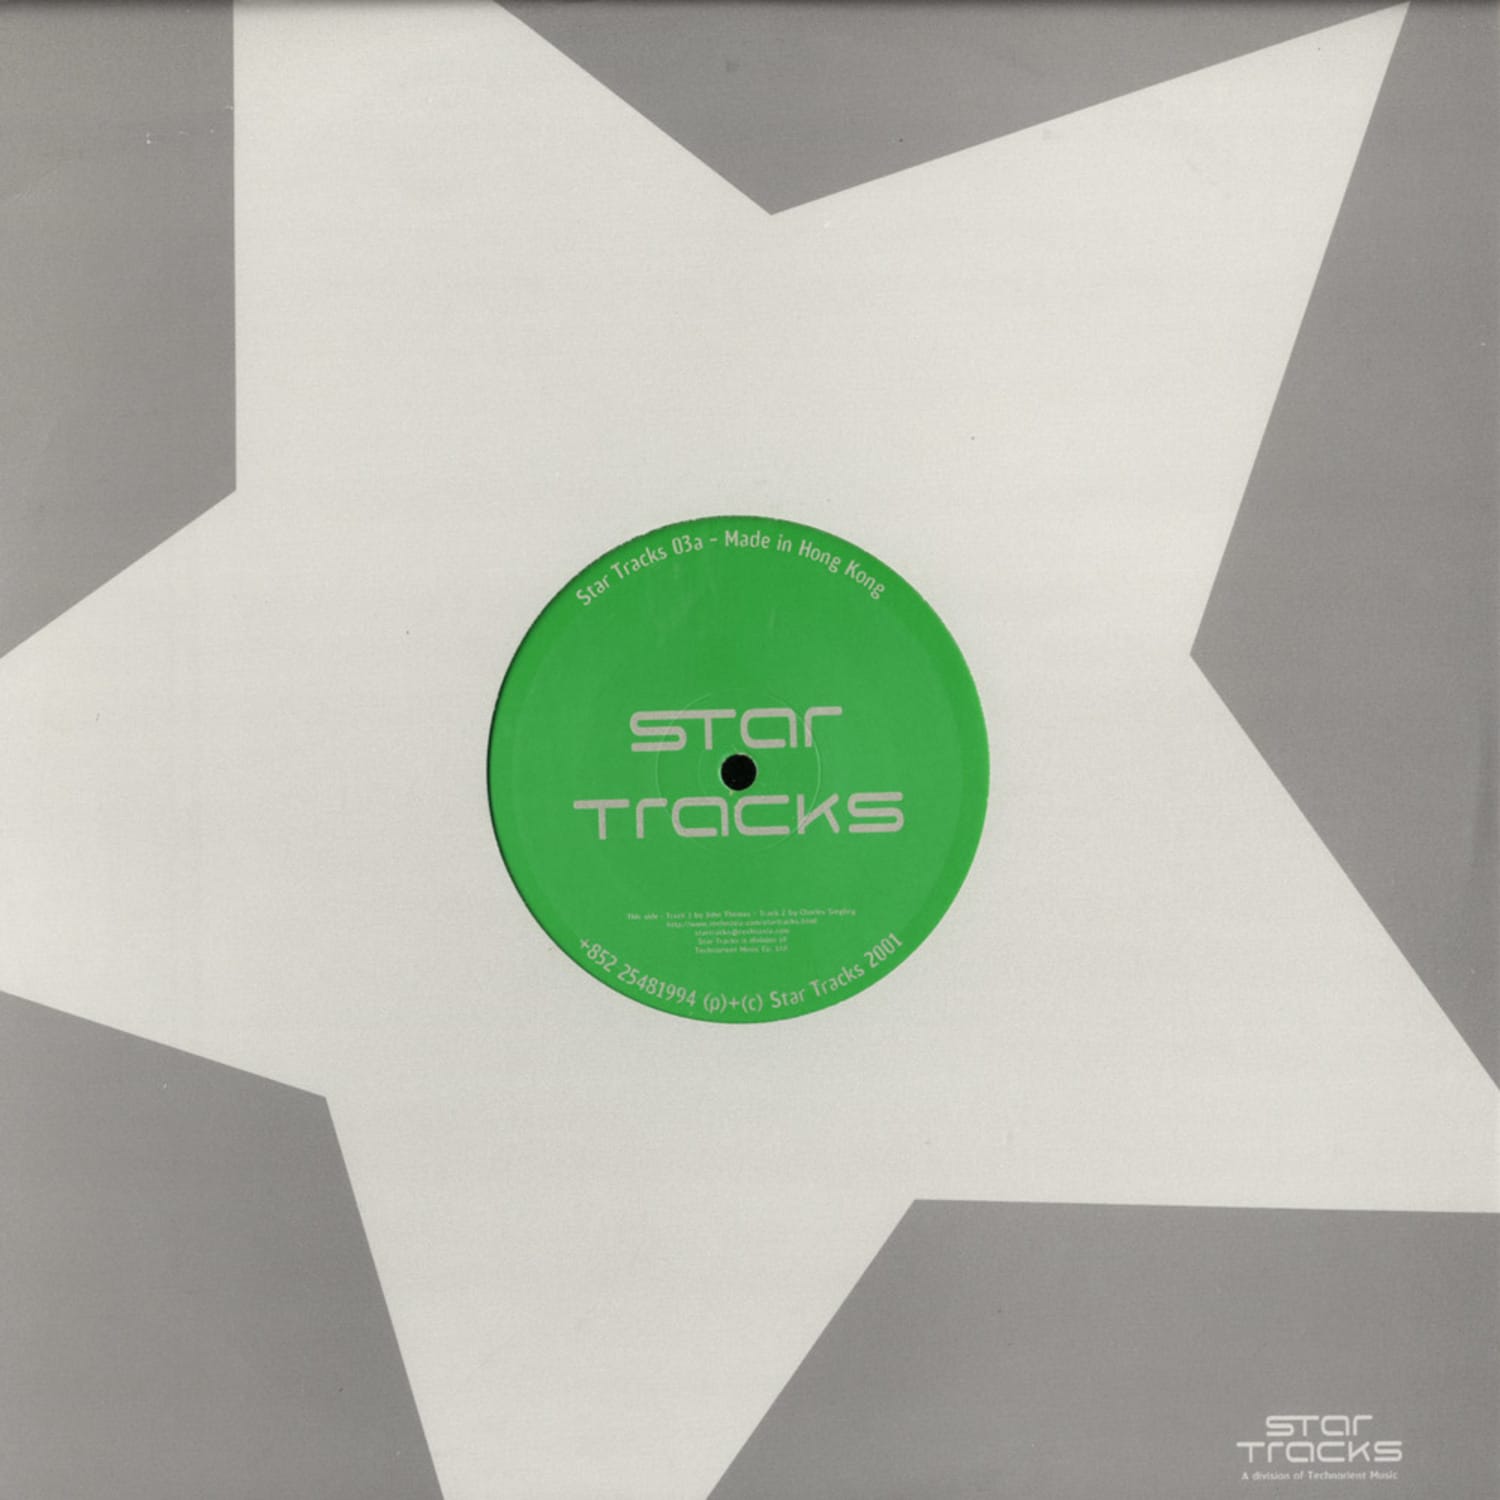 Charles Siegling - STAR TRACKS 03